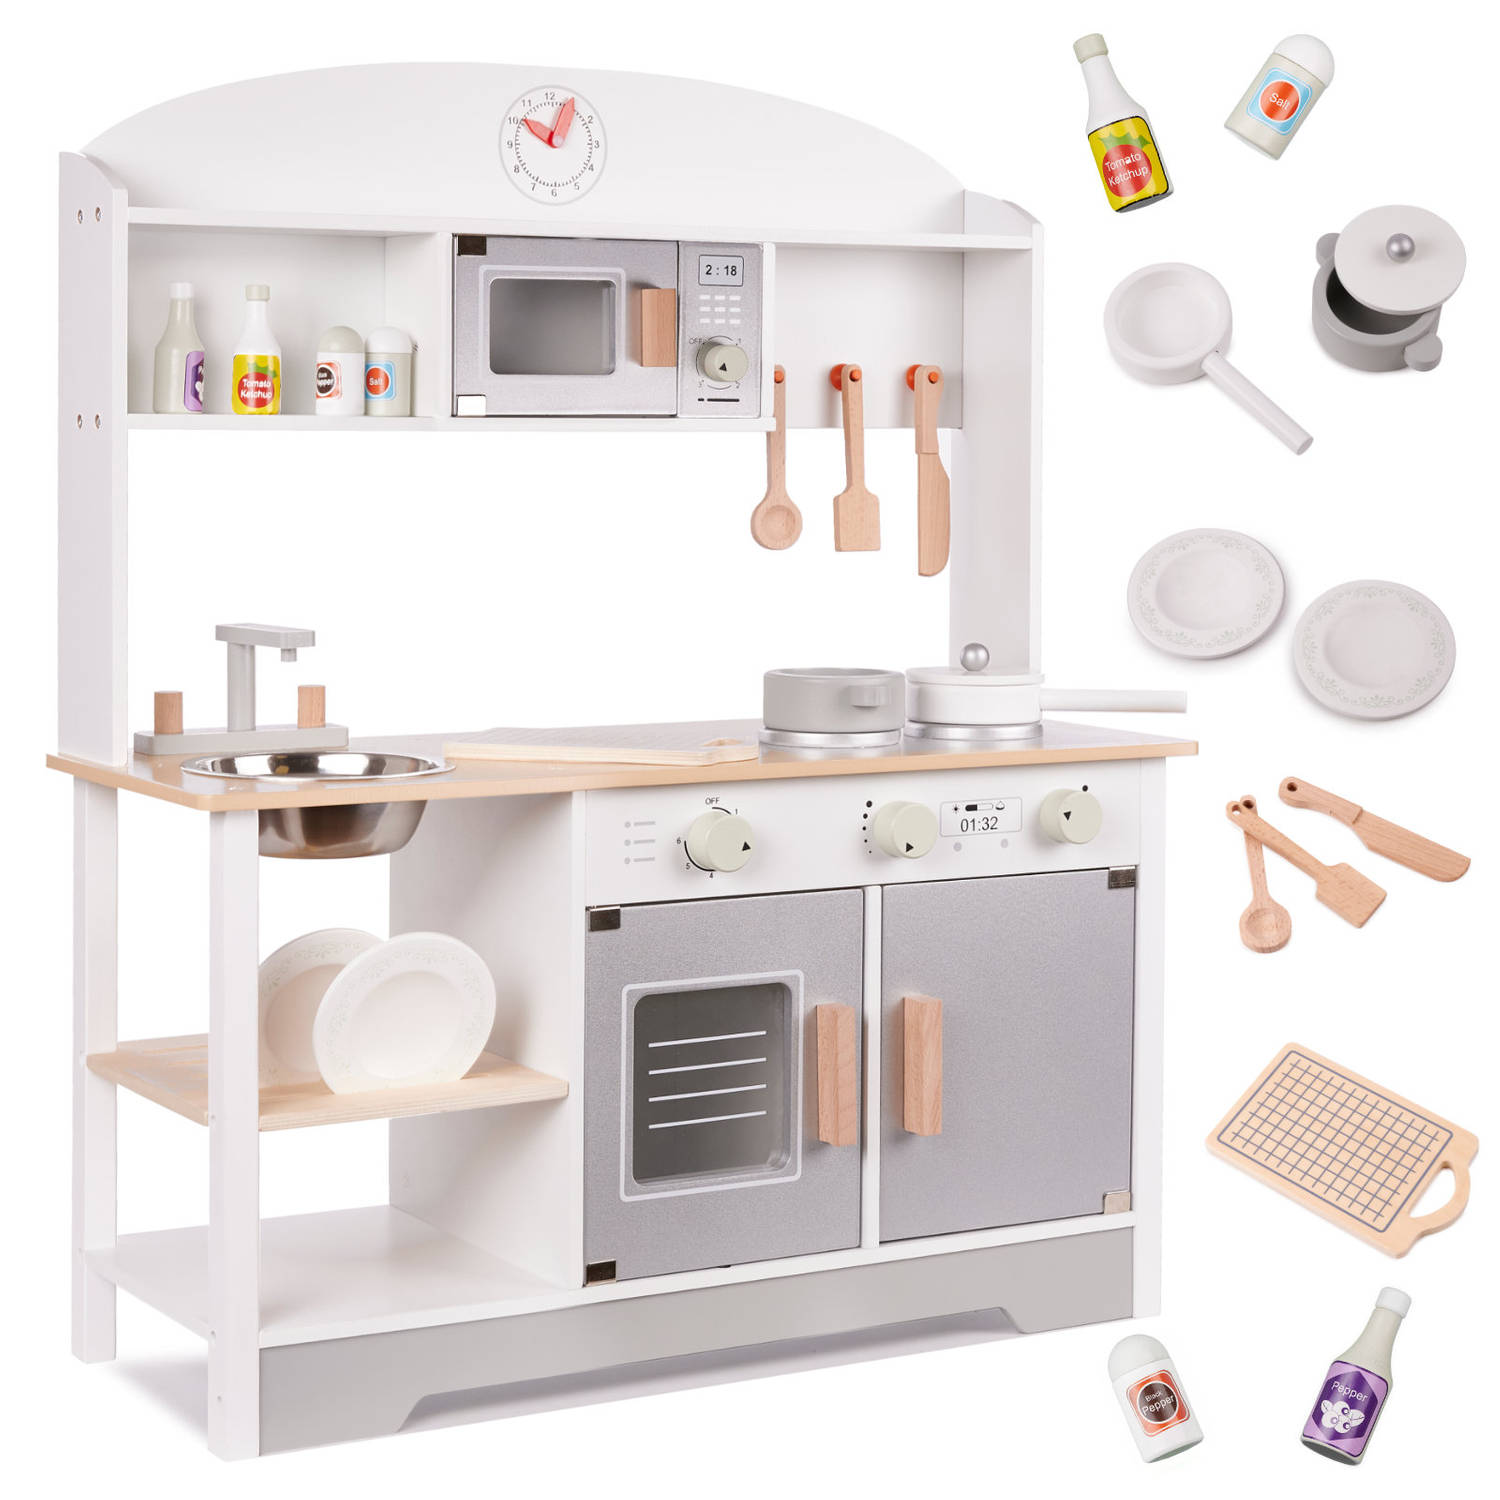 Luxe Moderne houten speelgoed keuken - speelkeuken - kinderkeuken - met gratis accessoires 68 cm x 25,5 cm x 82 cm